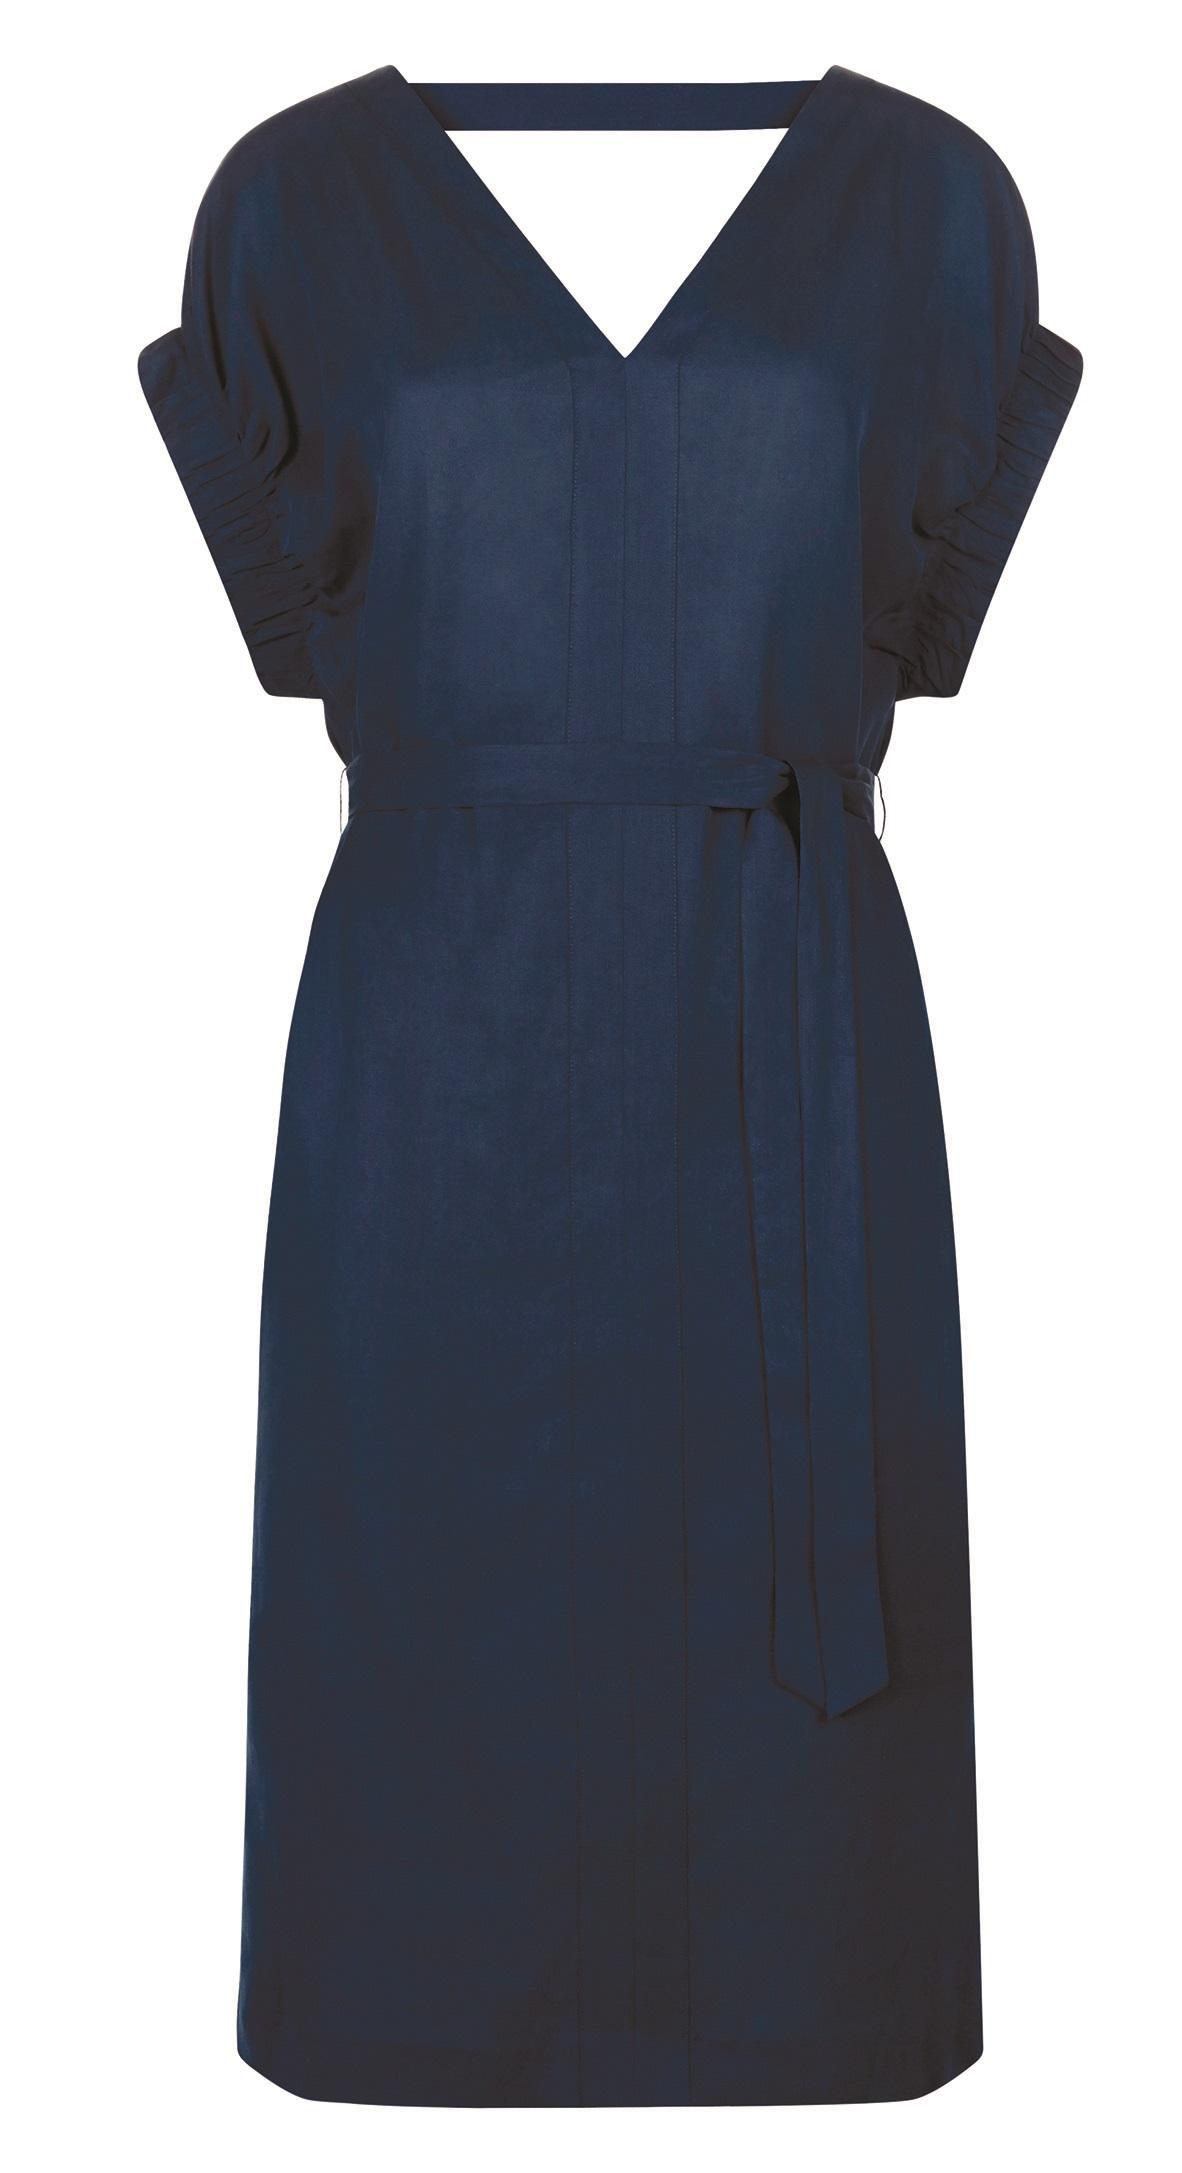 Jaeger, Tuck Sleeve Belted Dress, £125